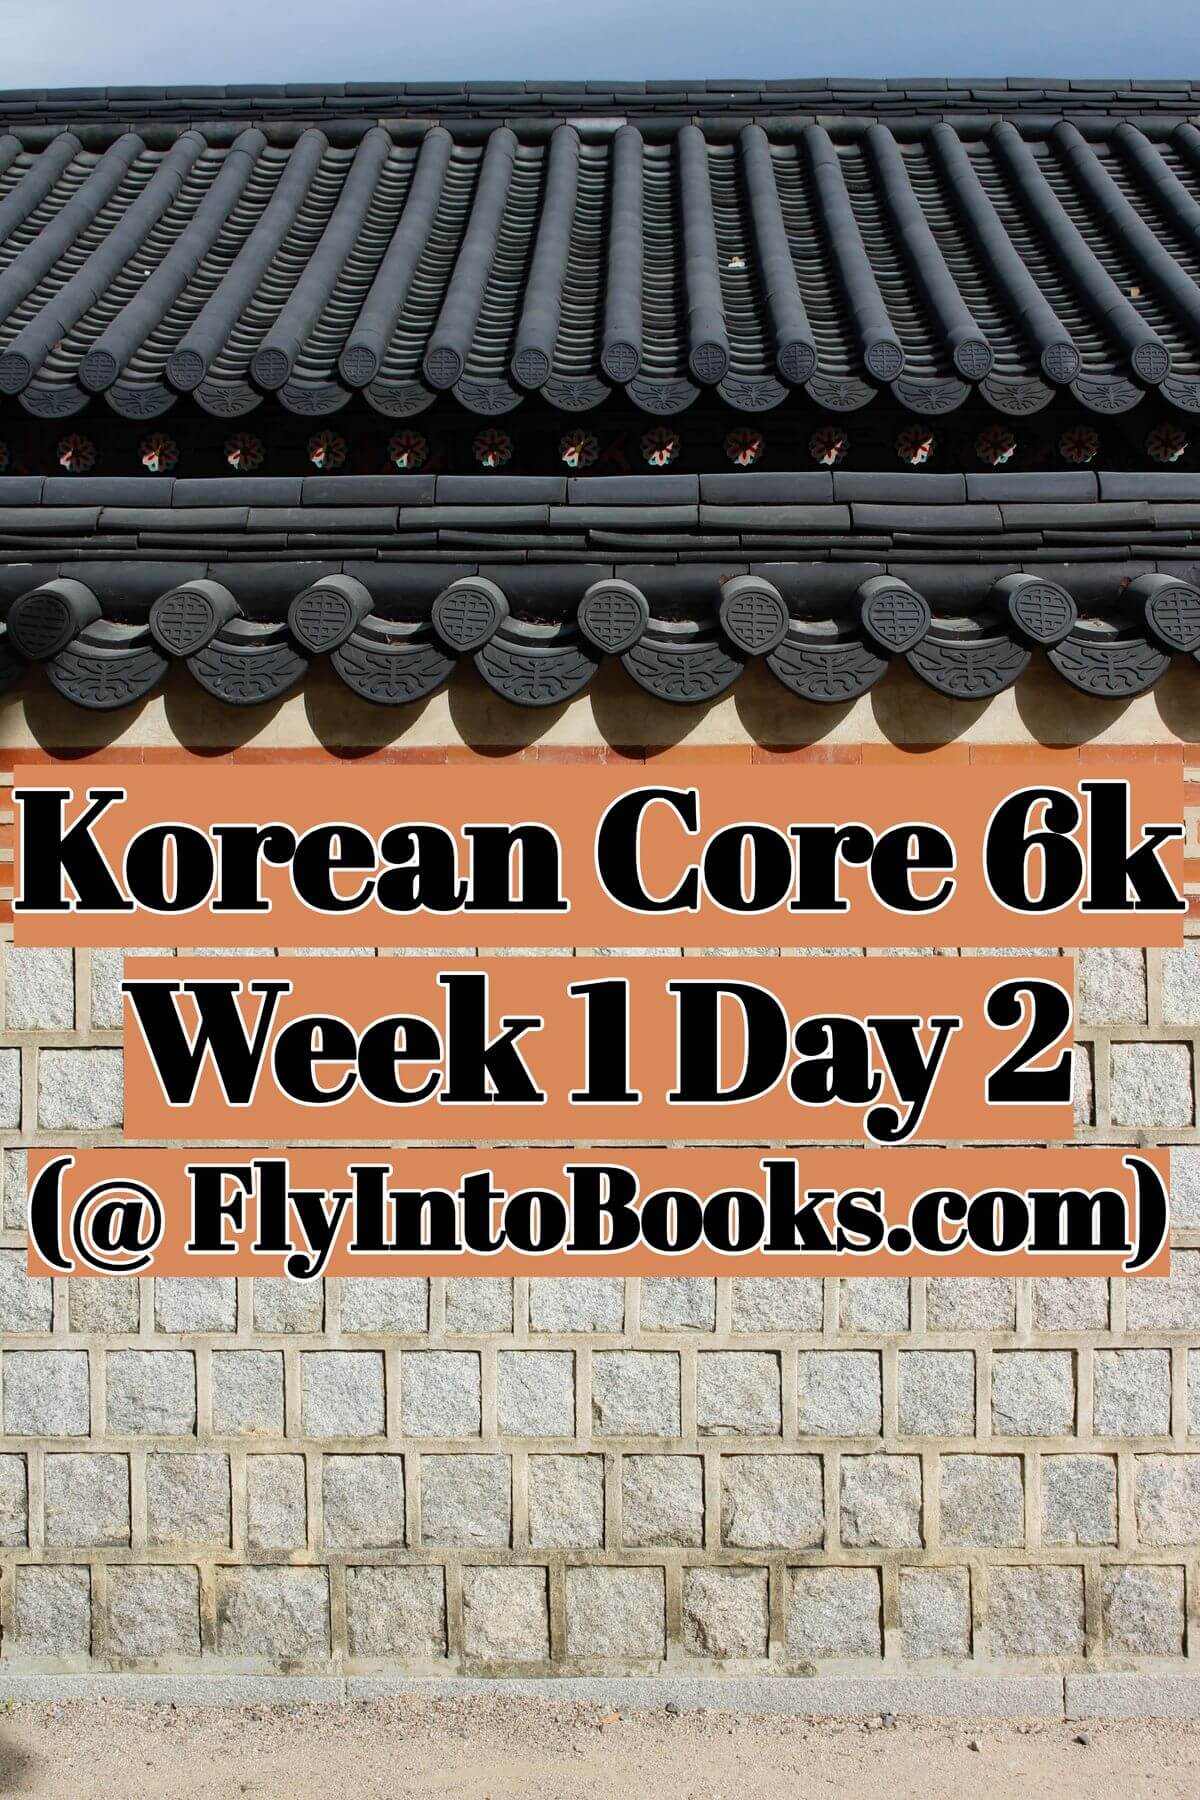 Korean Core 6k - Week 1 Day 2 (FlyIntoBooks.com)